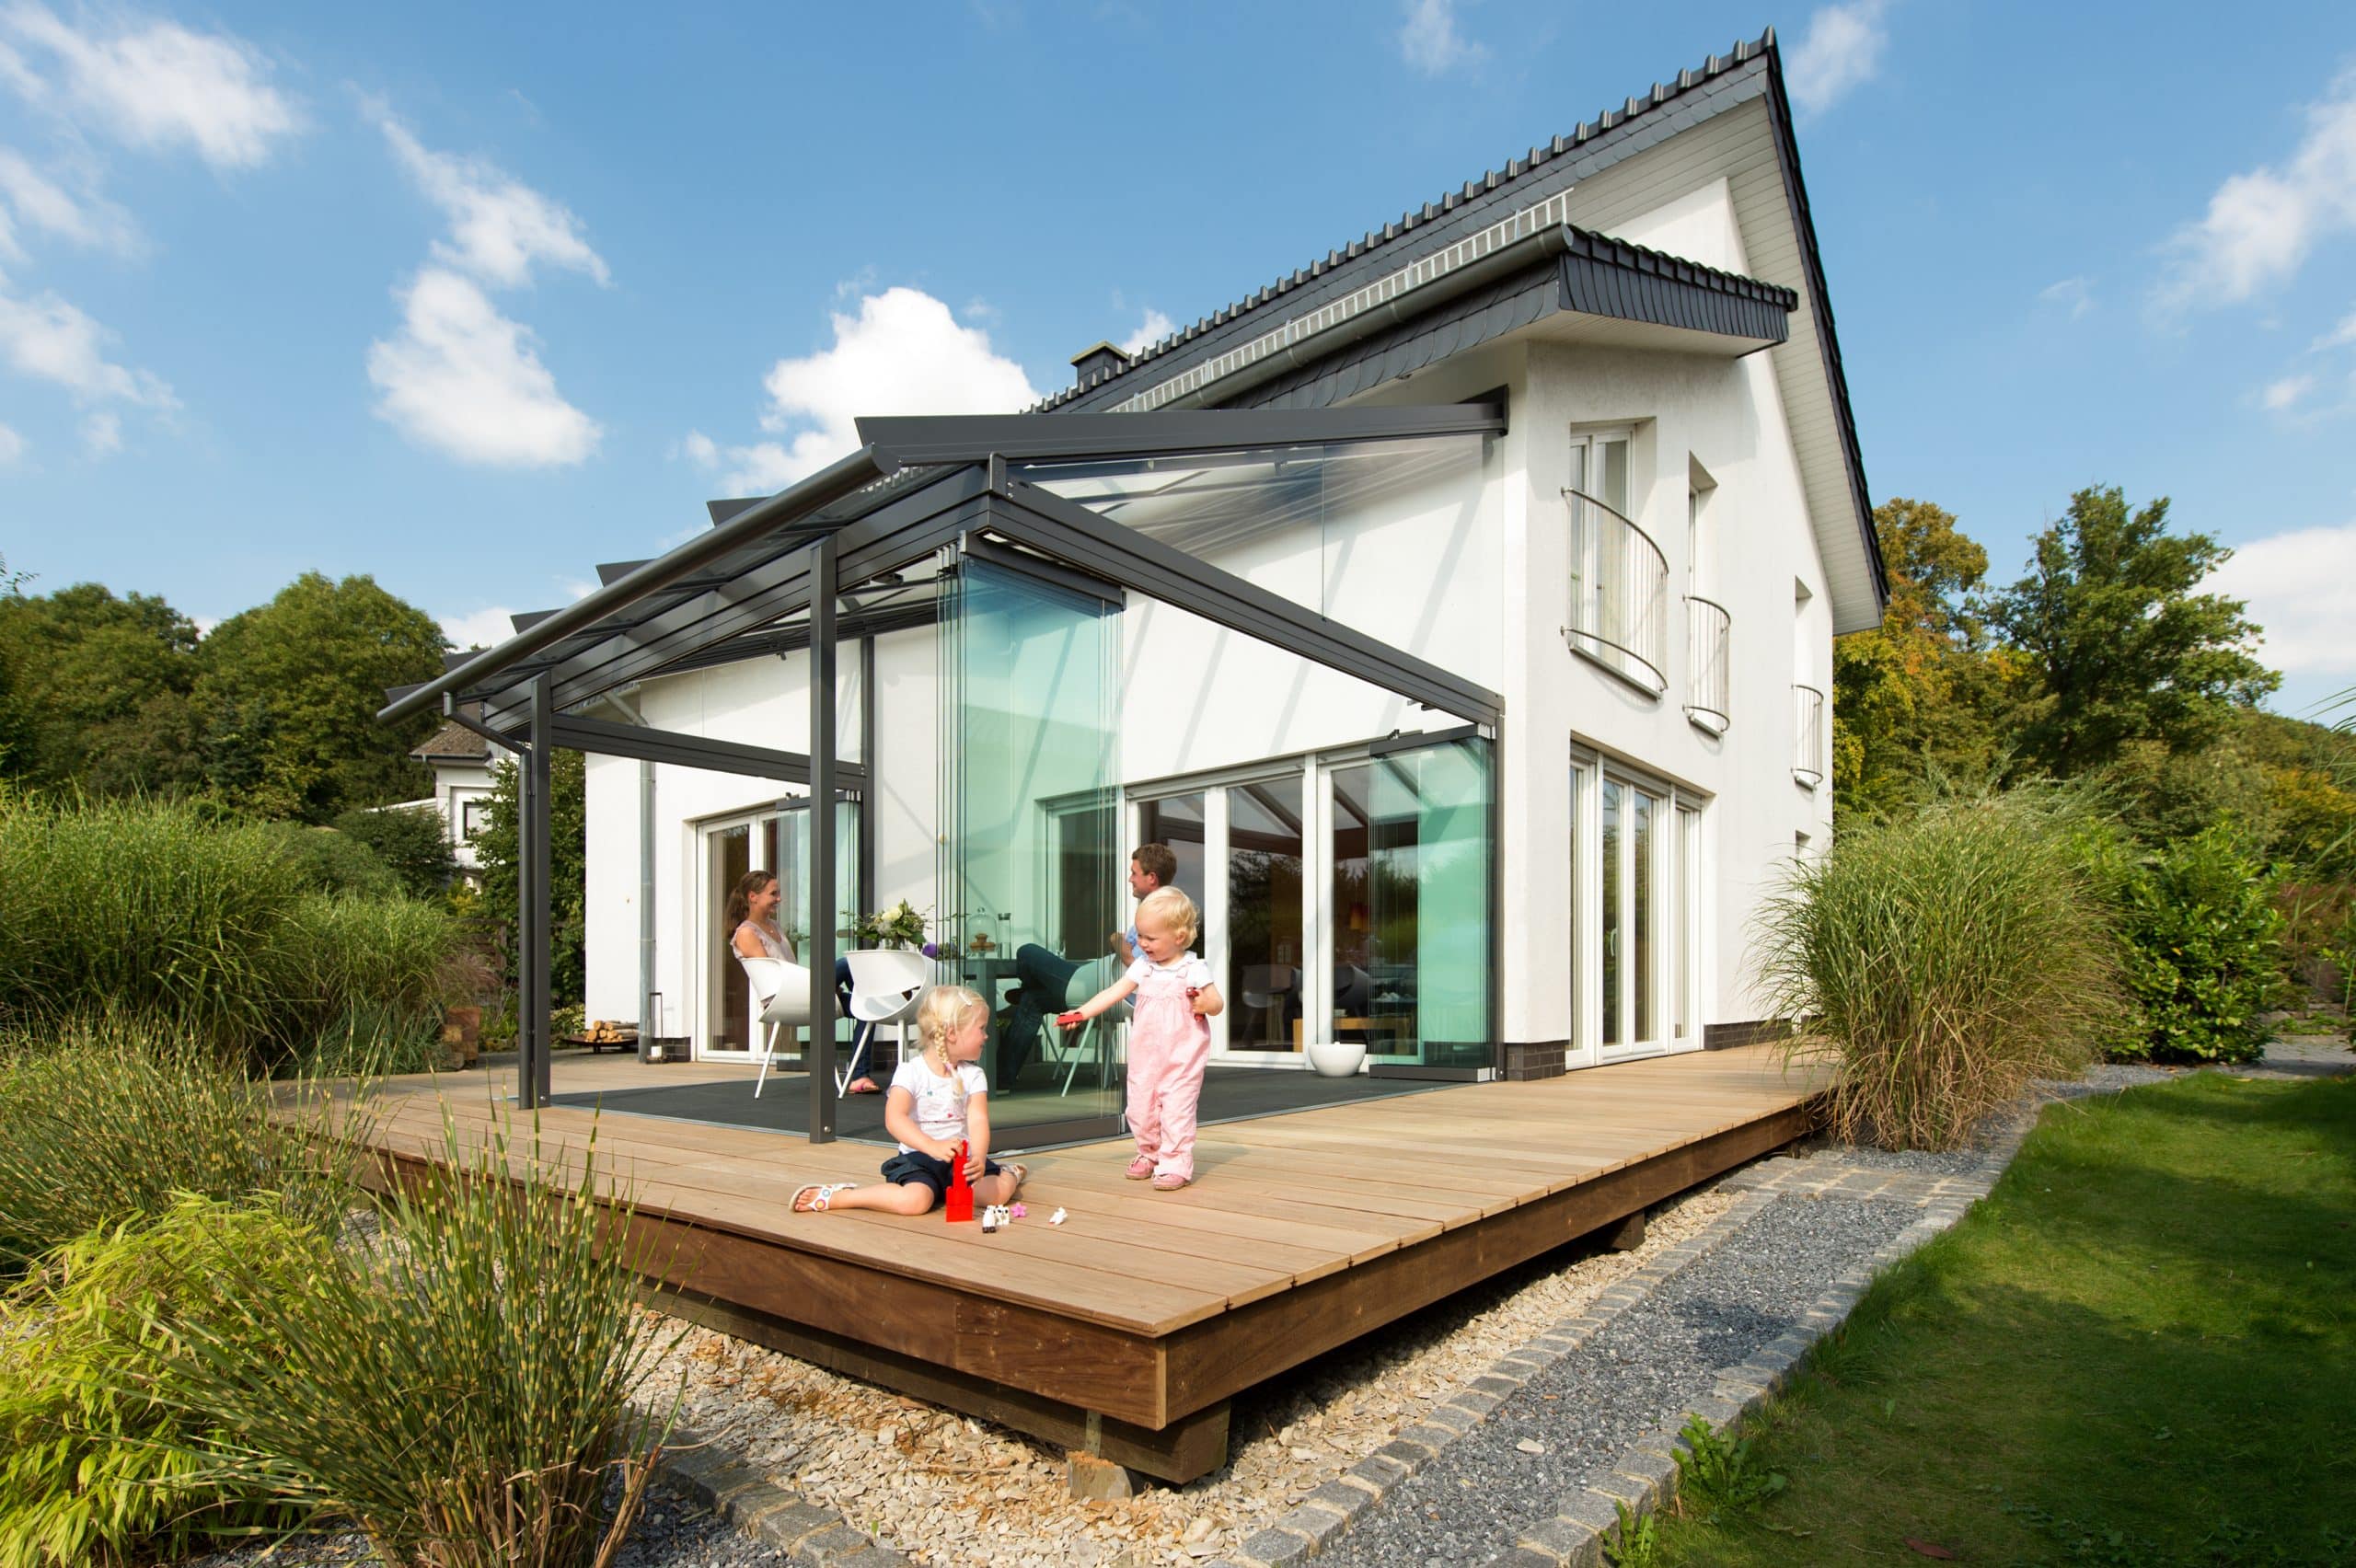 Solarlux zeigt ein modernes,weißes Einfamilienhaus mit großer Glasfaltwand zur Terrasse raus auf der Gartenmöbel stehen und Kinder spielend den Garten sehen.